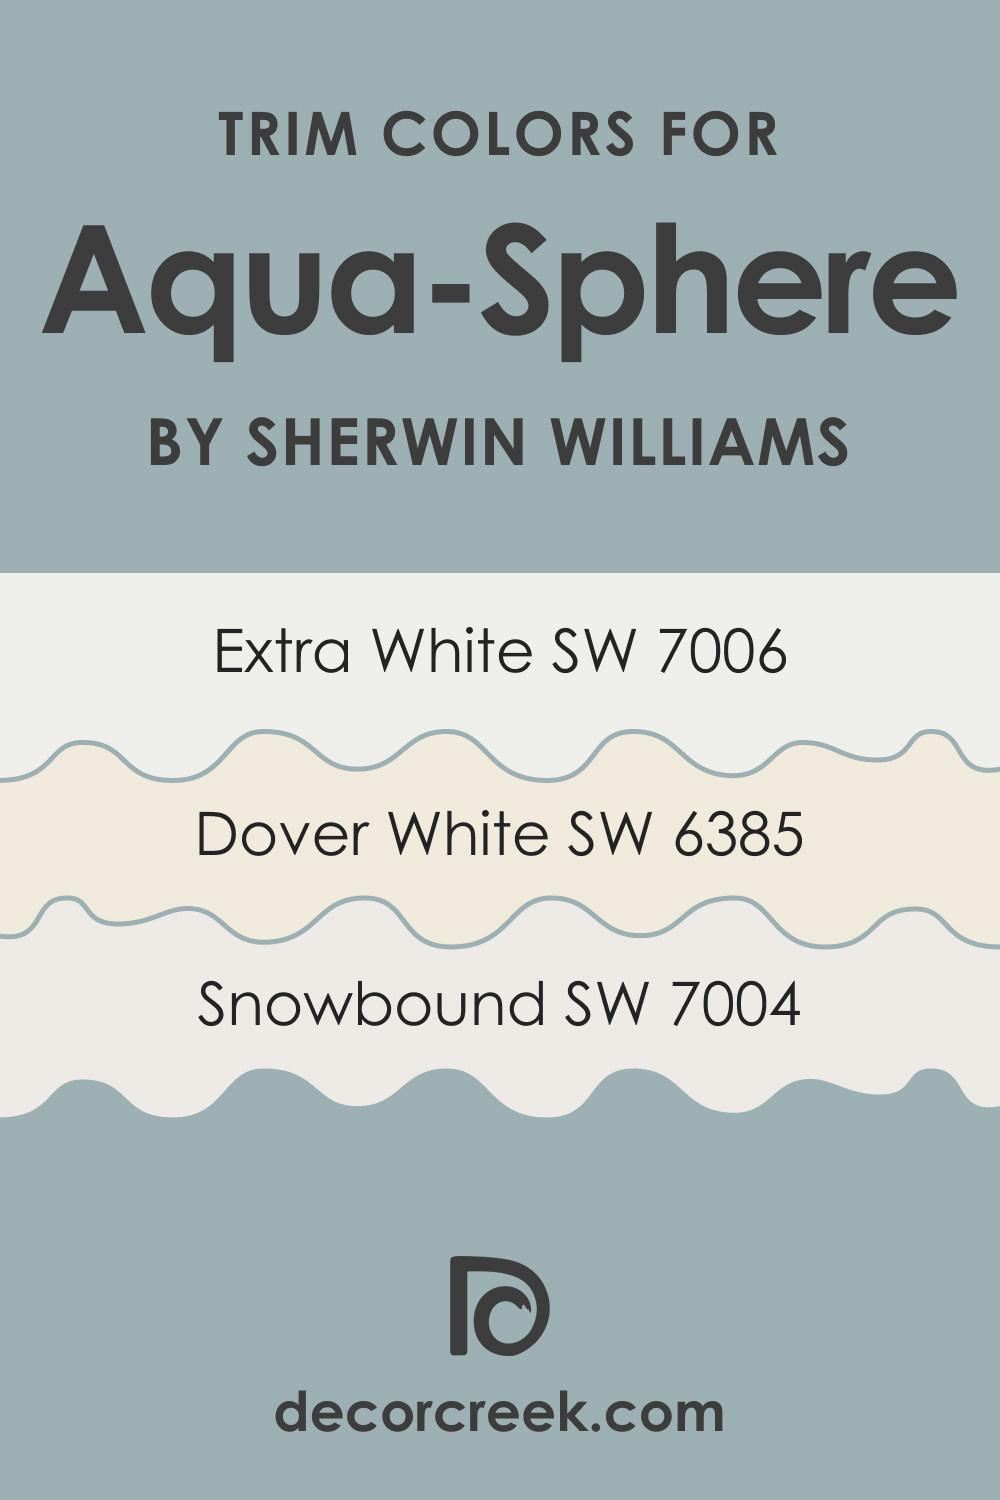 Trim Colors of SW 7613 Aqua-Sphere